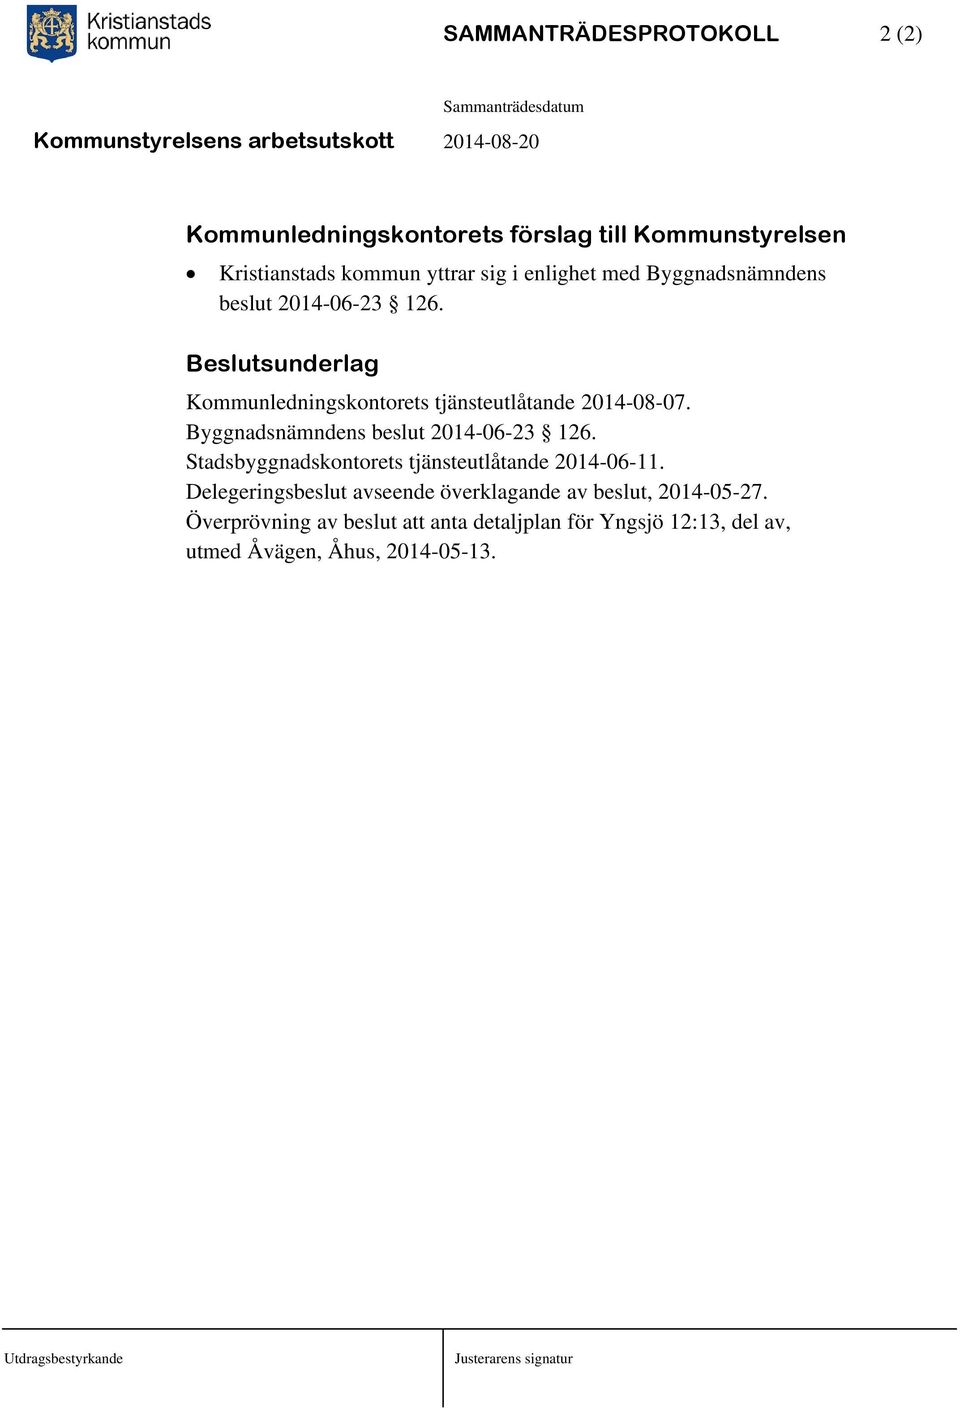 Byggnadsnämndens beslut 2014-06-23 126. Stadsbyggnadskontorets tjänsteutlåtande 2014-06-11.